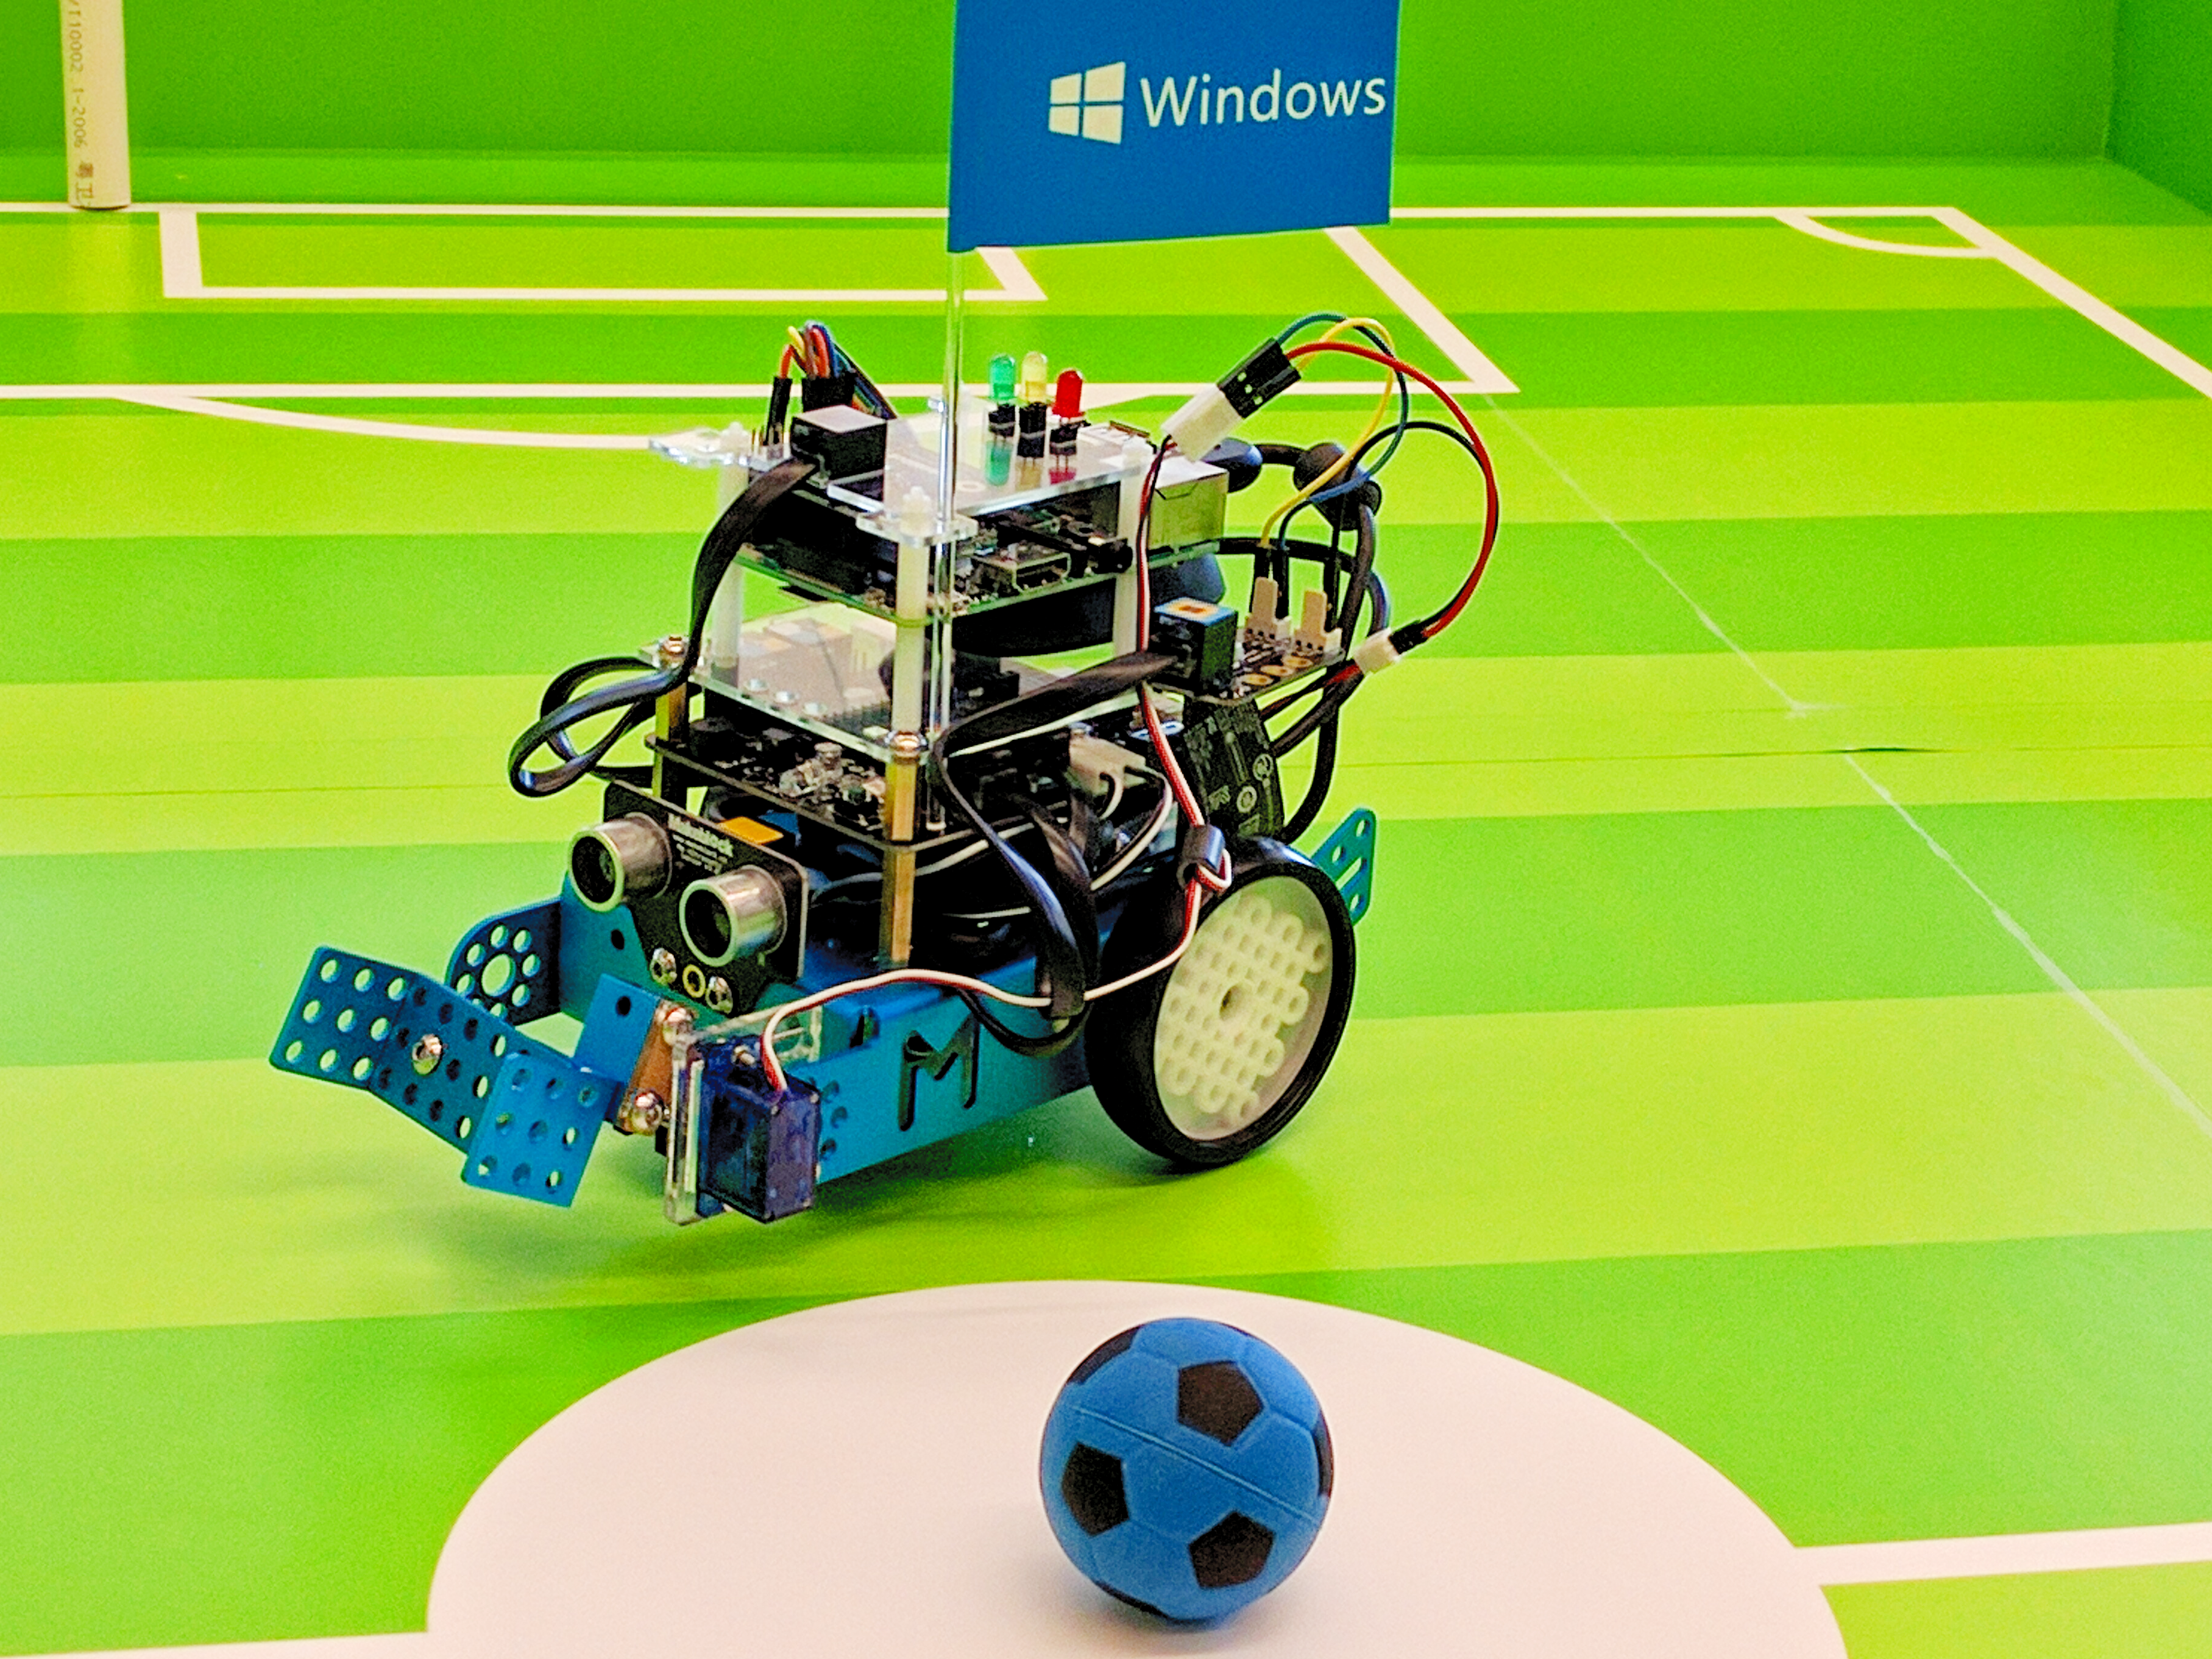 robot soccer bot design